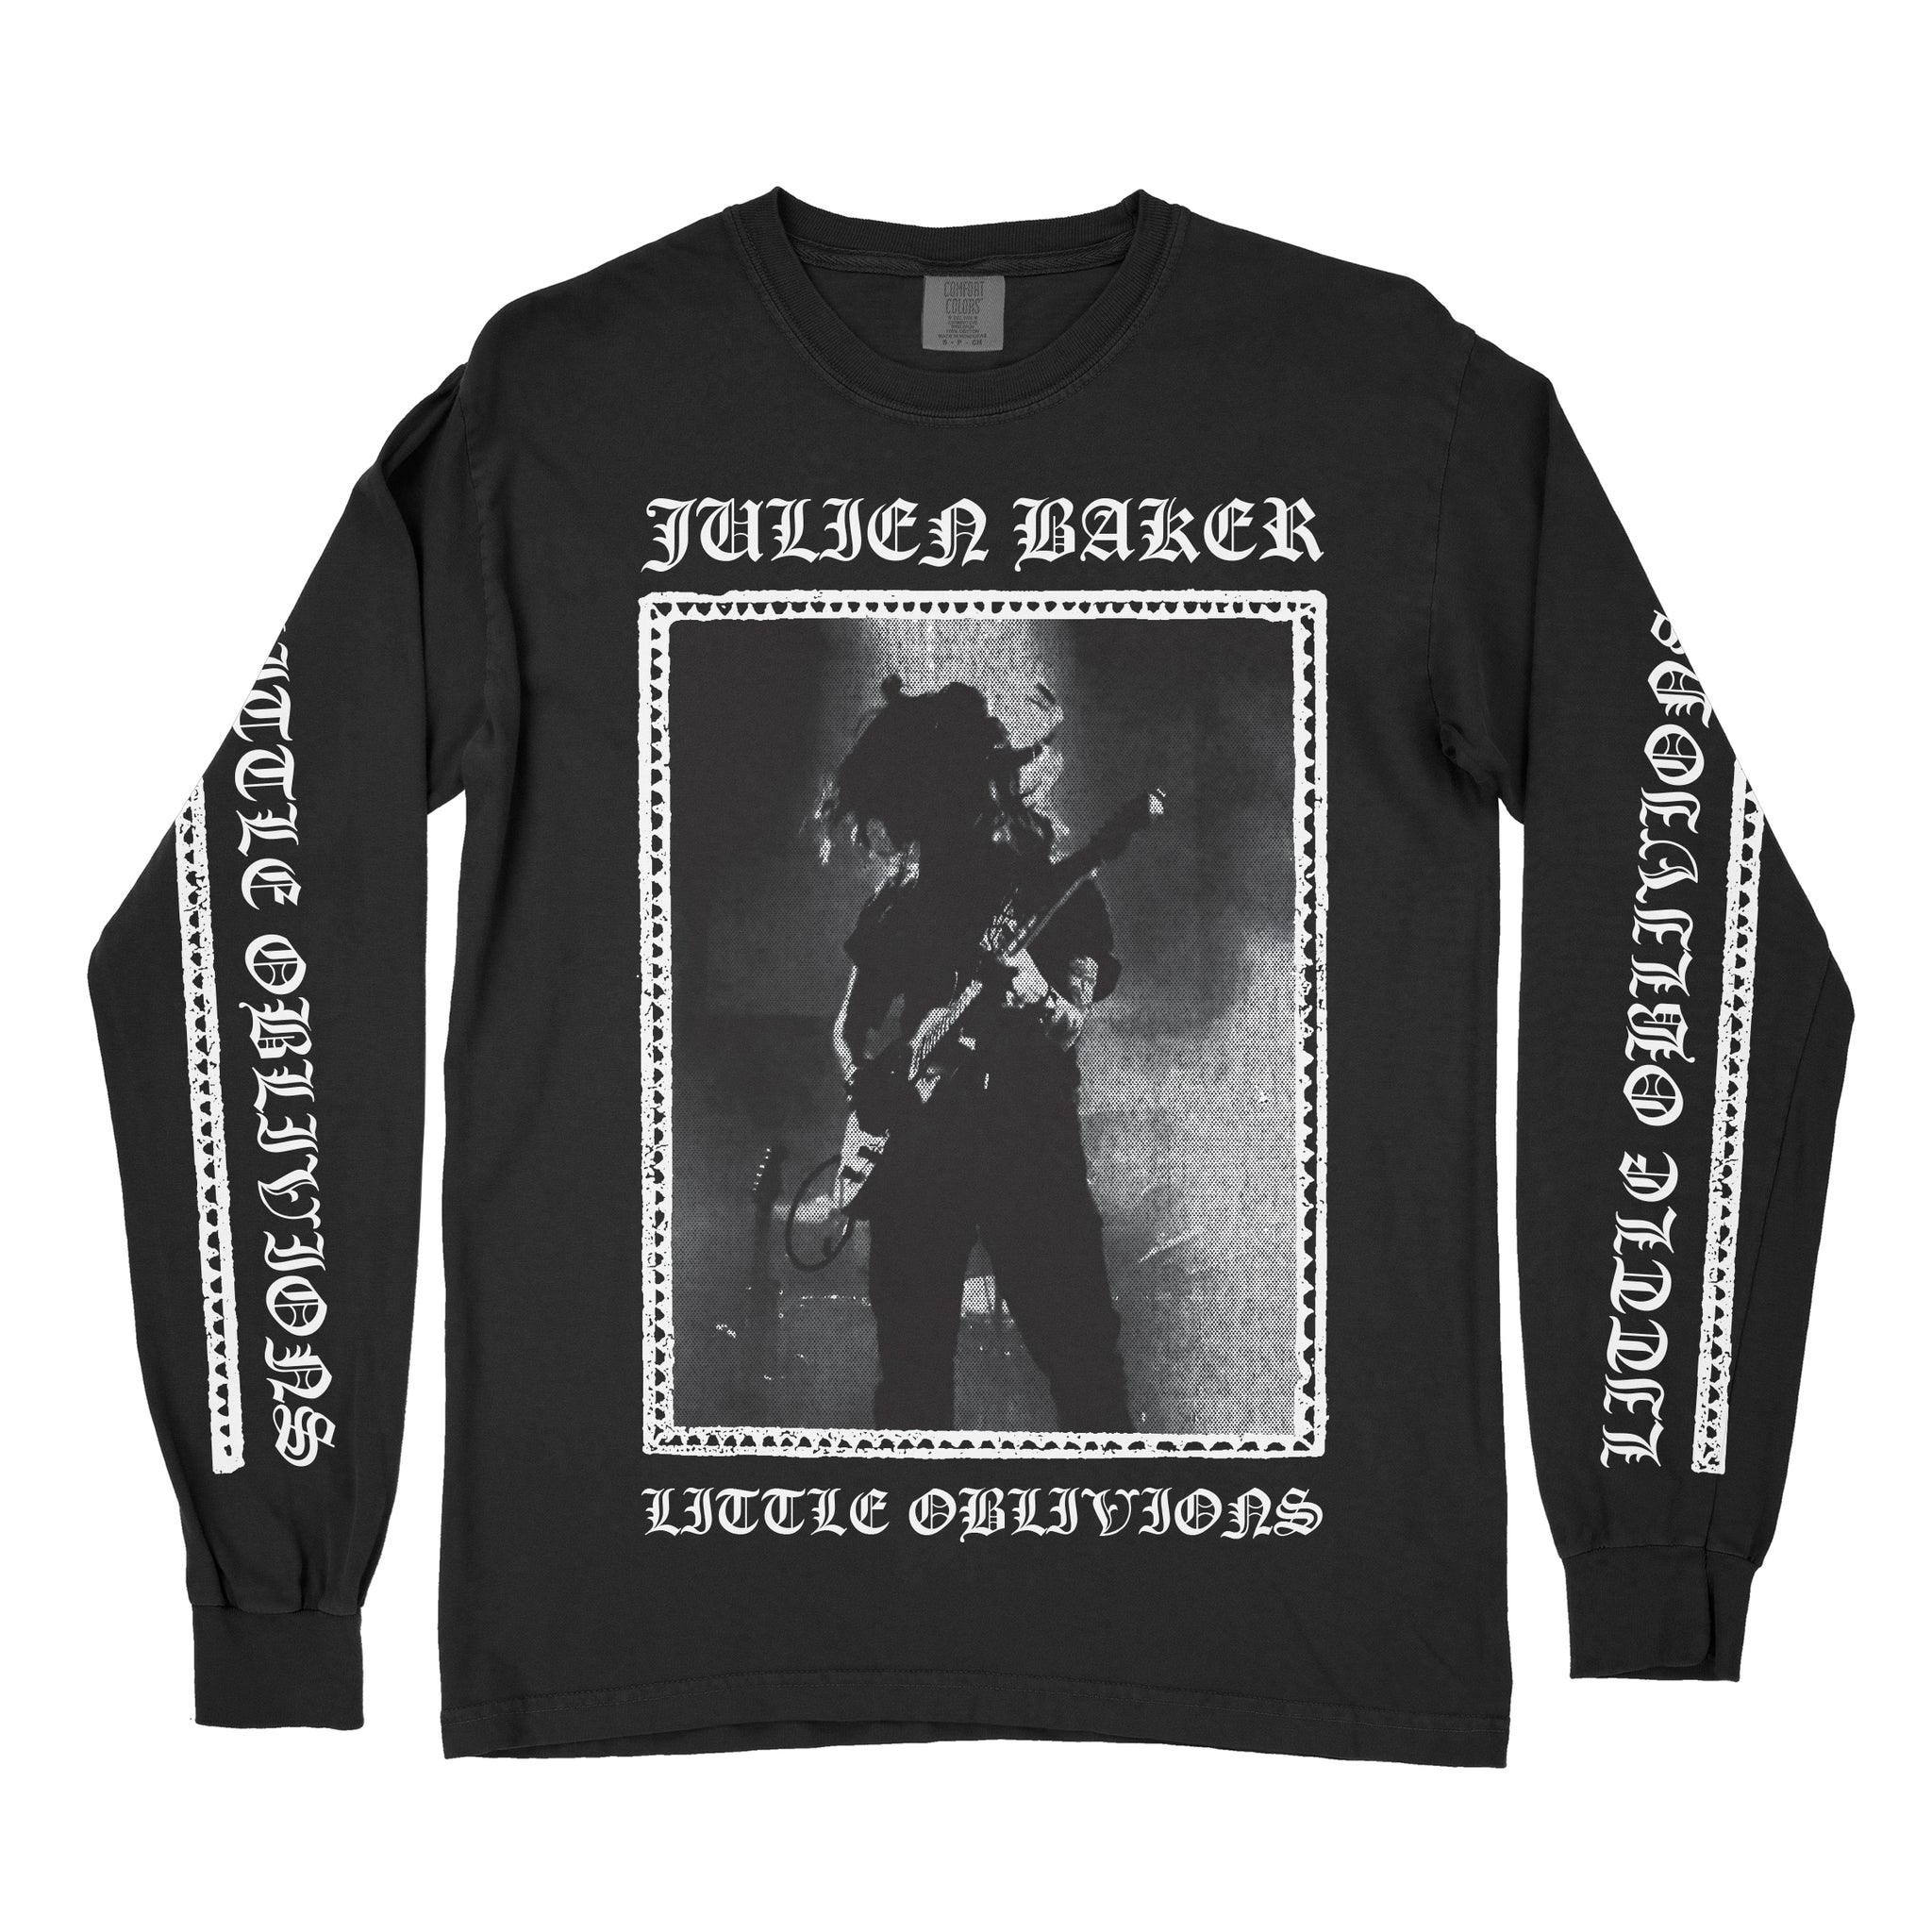 Julien Baker "Black Metal" Shirt